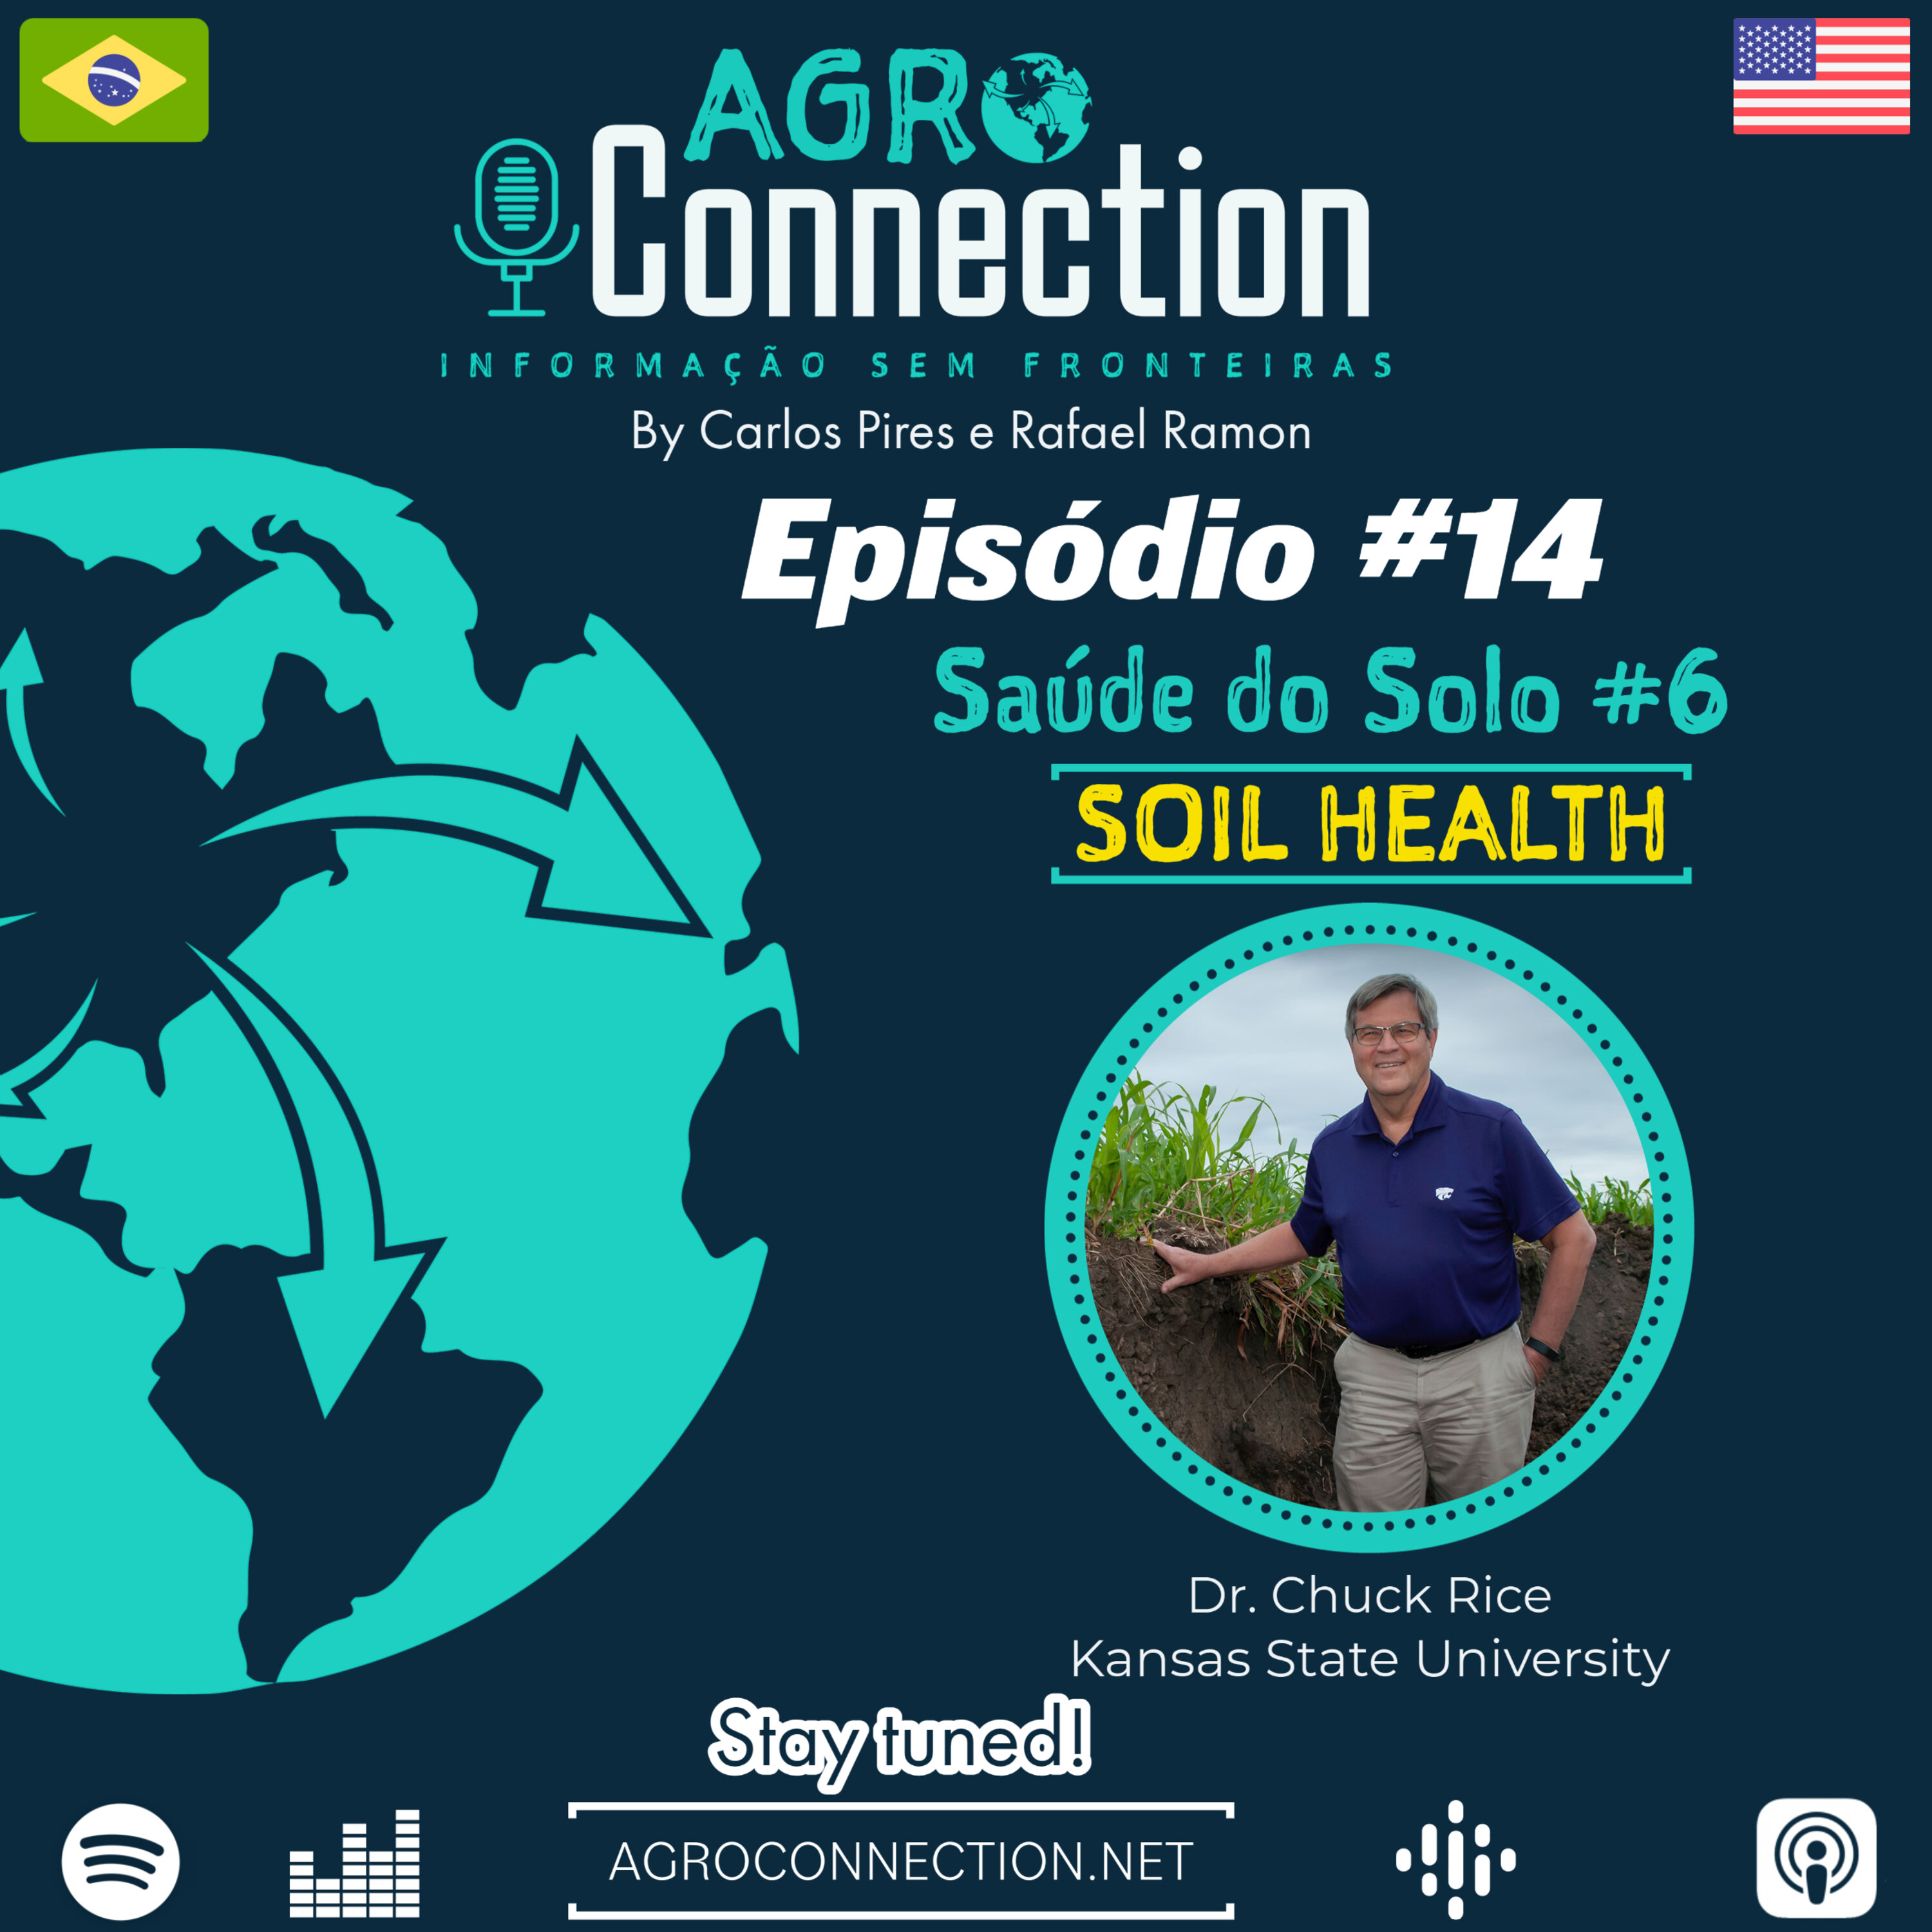 EP #14 - Especial Saúde do Solo #6 EN - Fechando a série especial de saúde do solo com chave de ouro e com novidades!